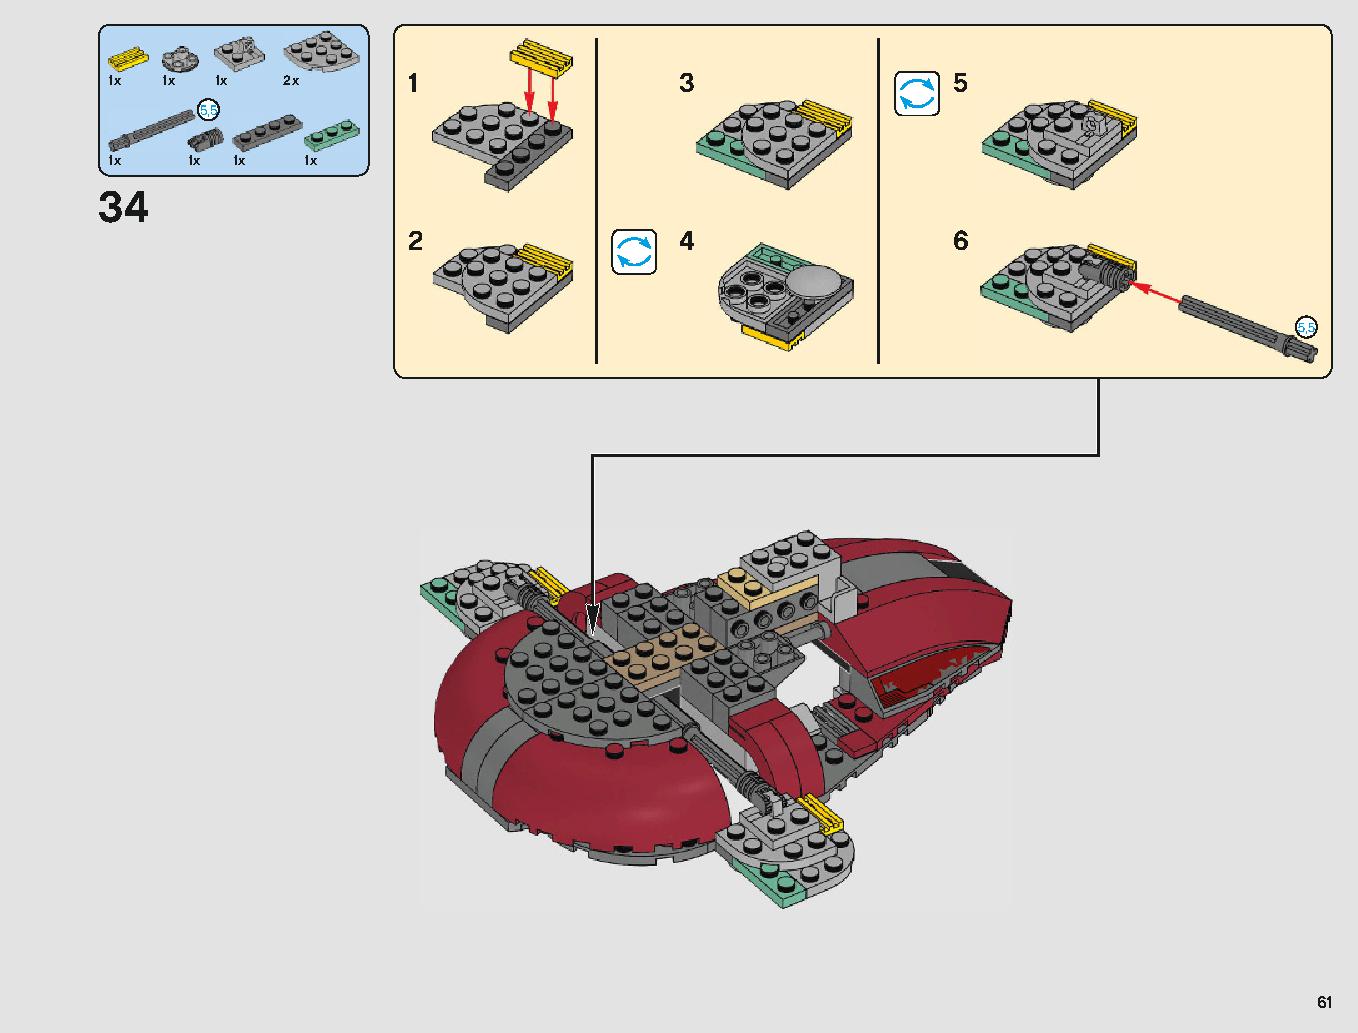 クラウド・シティ 75222 レゴの商品情報 レゴの説明書・組立方法 61 page